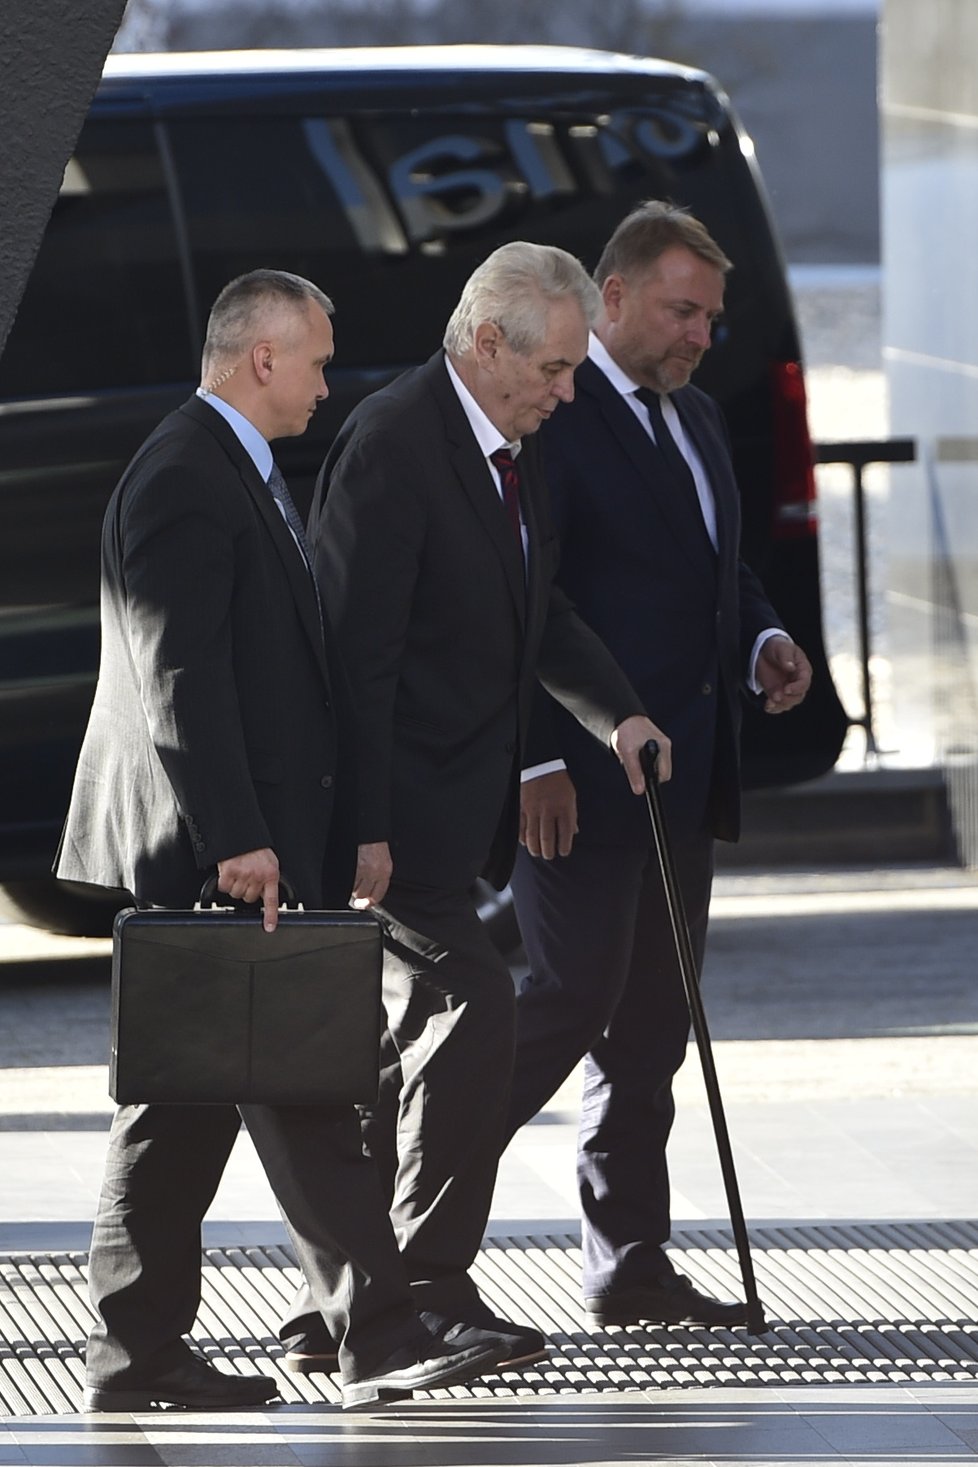 Prezident Miloš Zeman přijel do Brna už v neděli. Ubytovaný je v hotelu International, kde se sešel také s ministryní školství Kateřinou Valachovou, která oznámila ke konci května rezignaci.